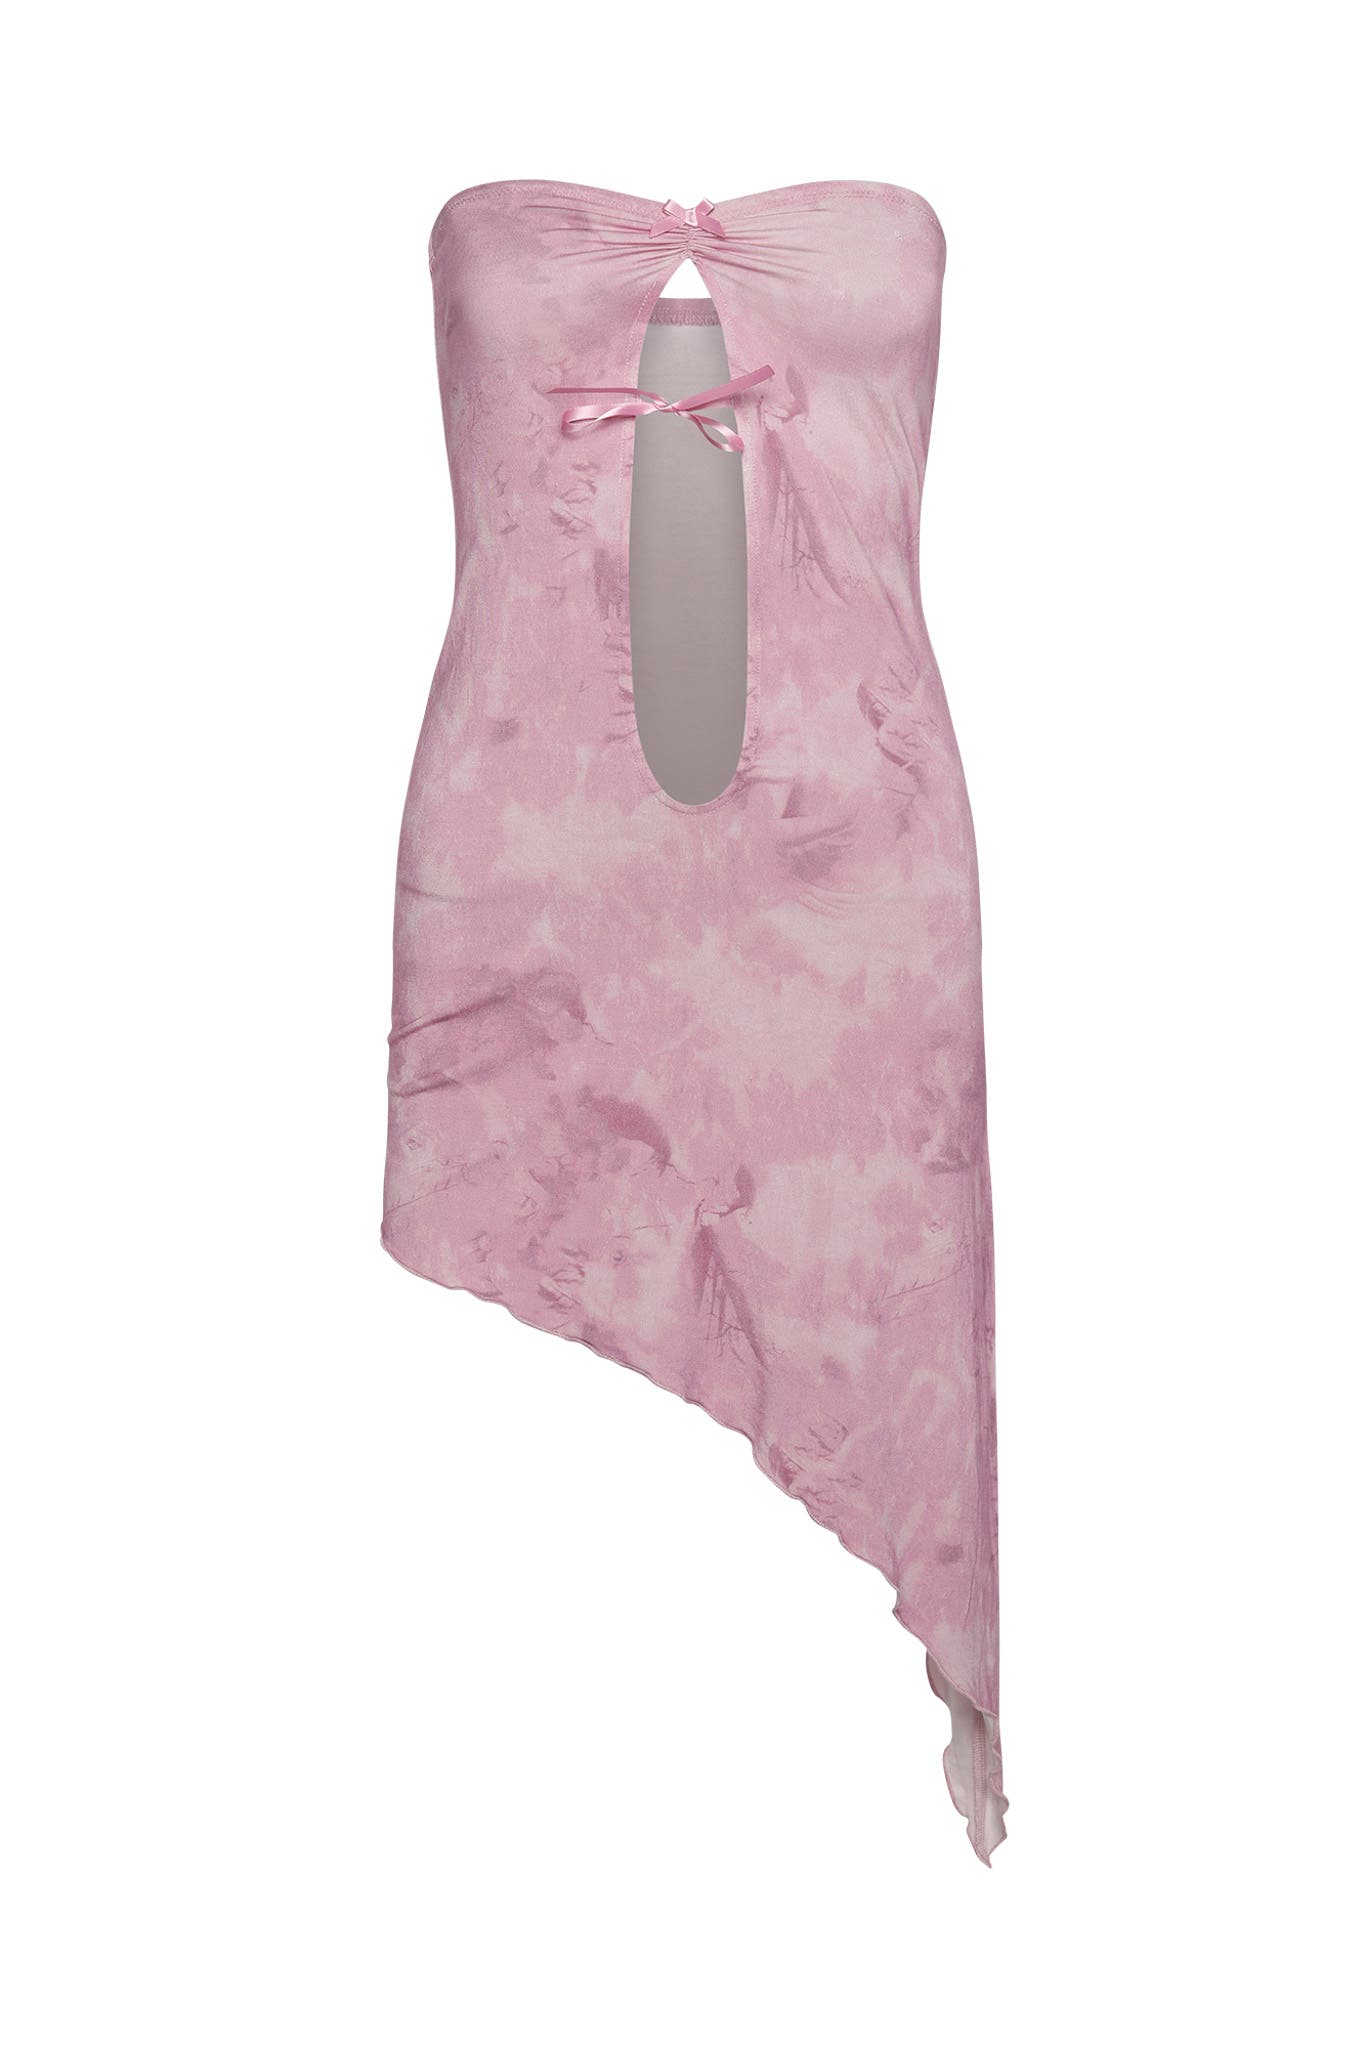 MAGNOLIA DRESS - PINK : ROSE QUARTZ